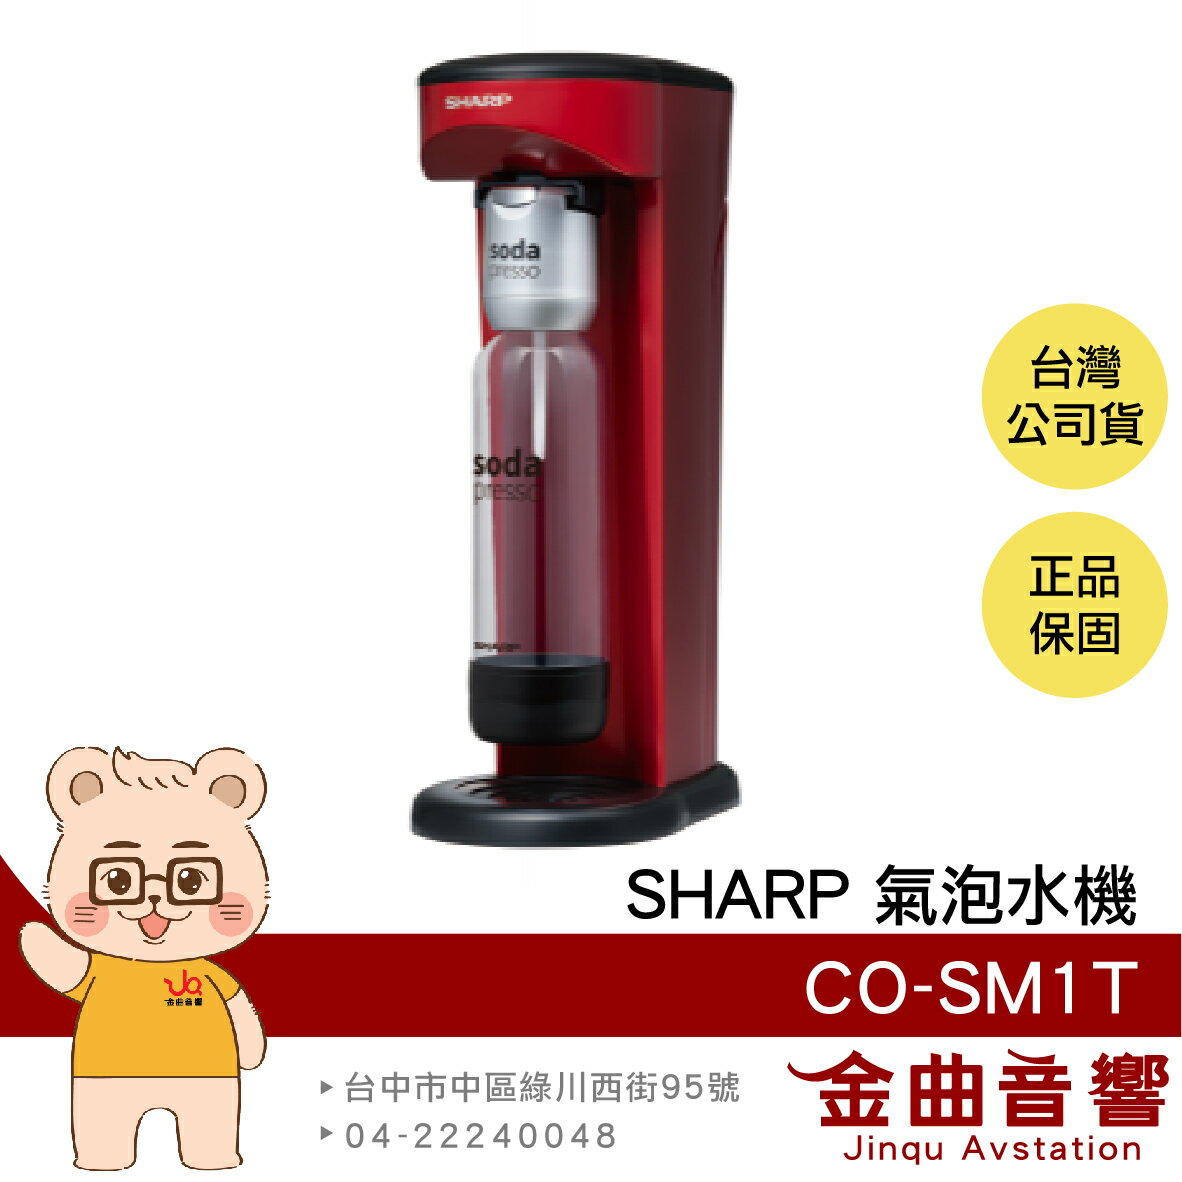 SHARP 夏普 CO-SM1T 蕃茄紅 防爆裝置 輕鬆拆卸 耐壓水瓶 soda presso 氣泡水機 | 金曲音響